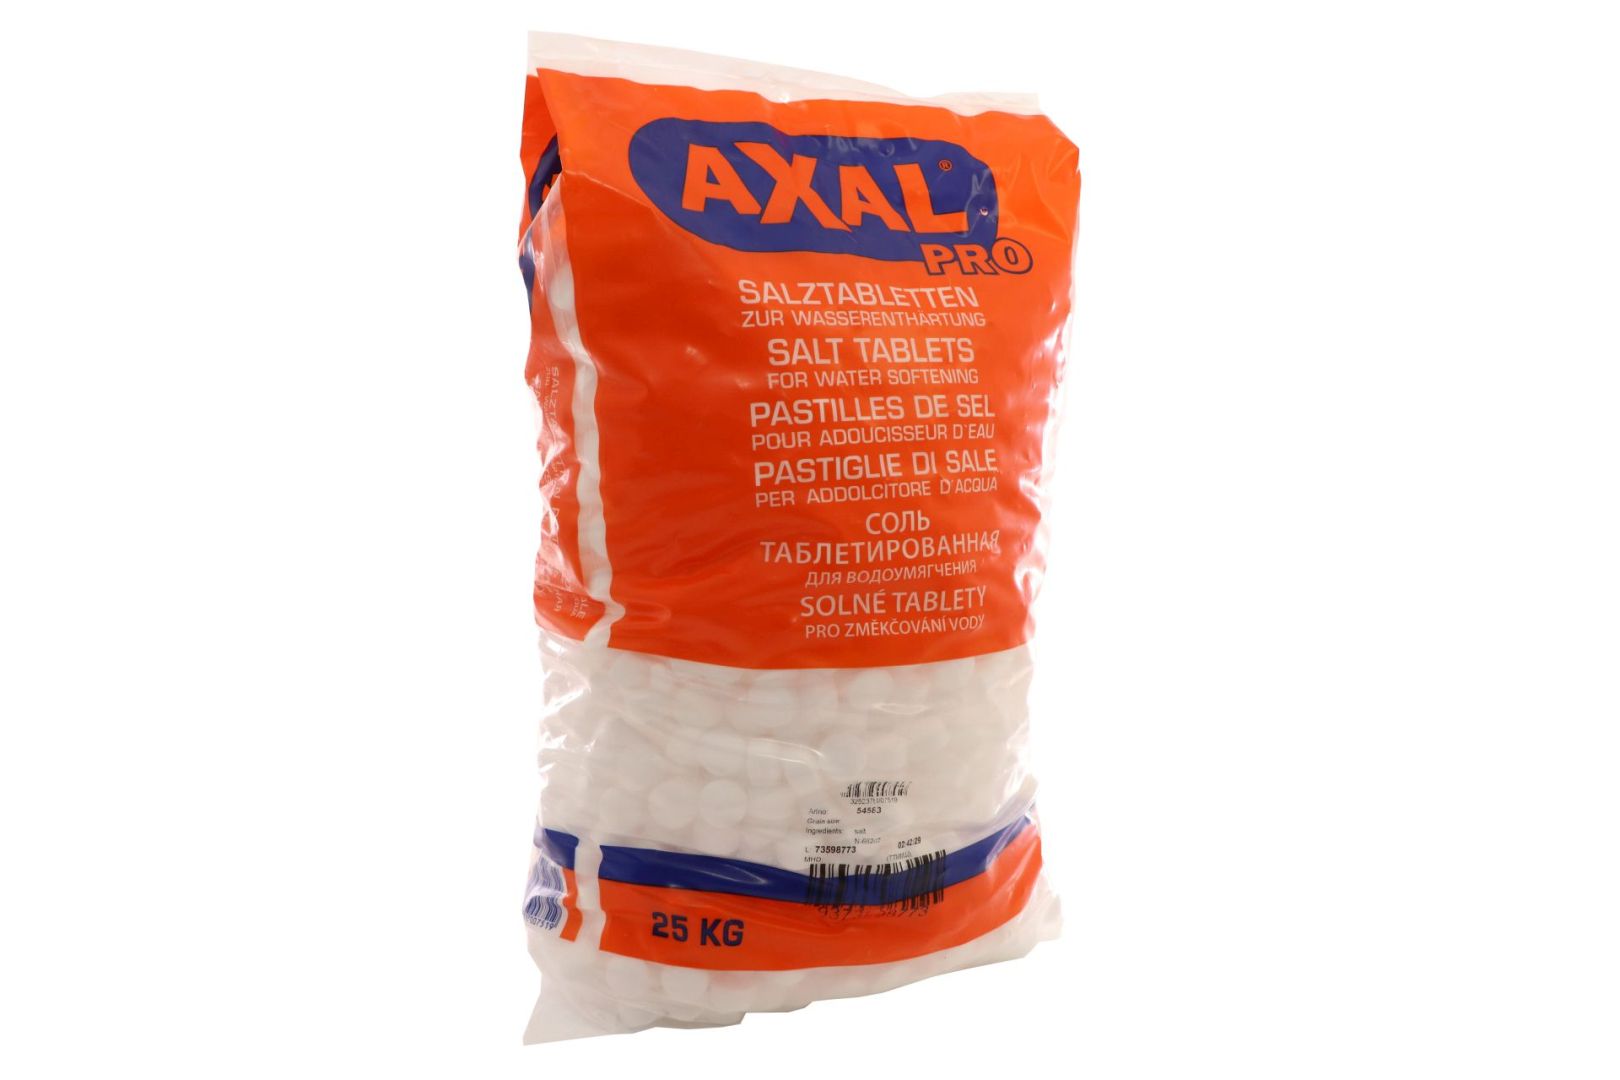 AXAL PRO Regeneriersalz, Salztabletten zur Wasseraufbereitung, 20 x 25 kg auf Palette **Selbstabholung**